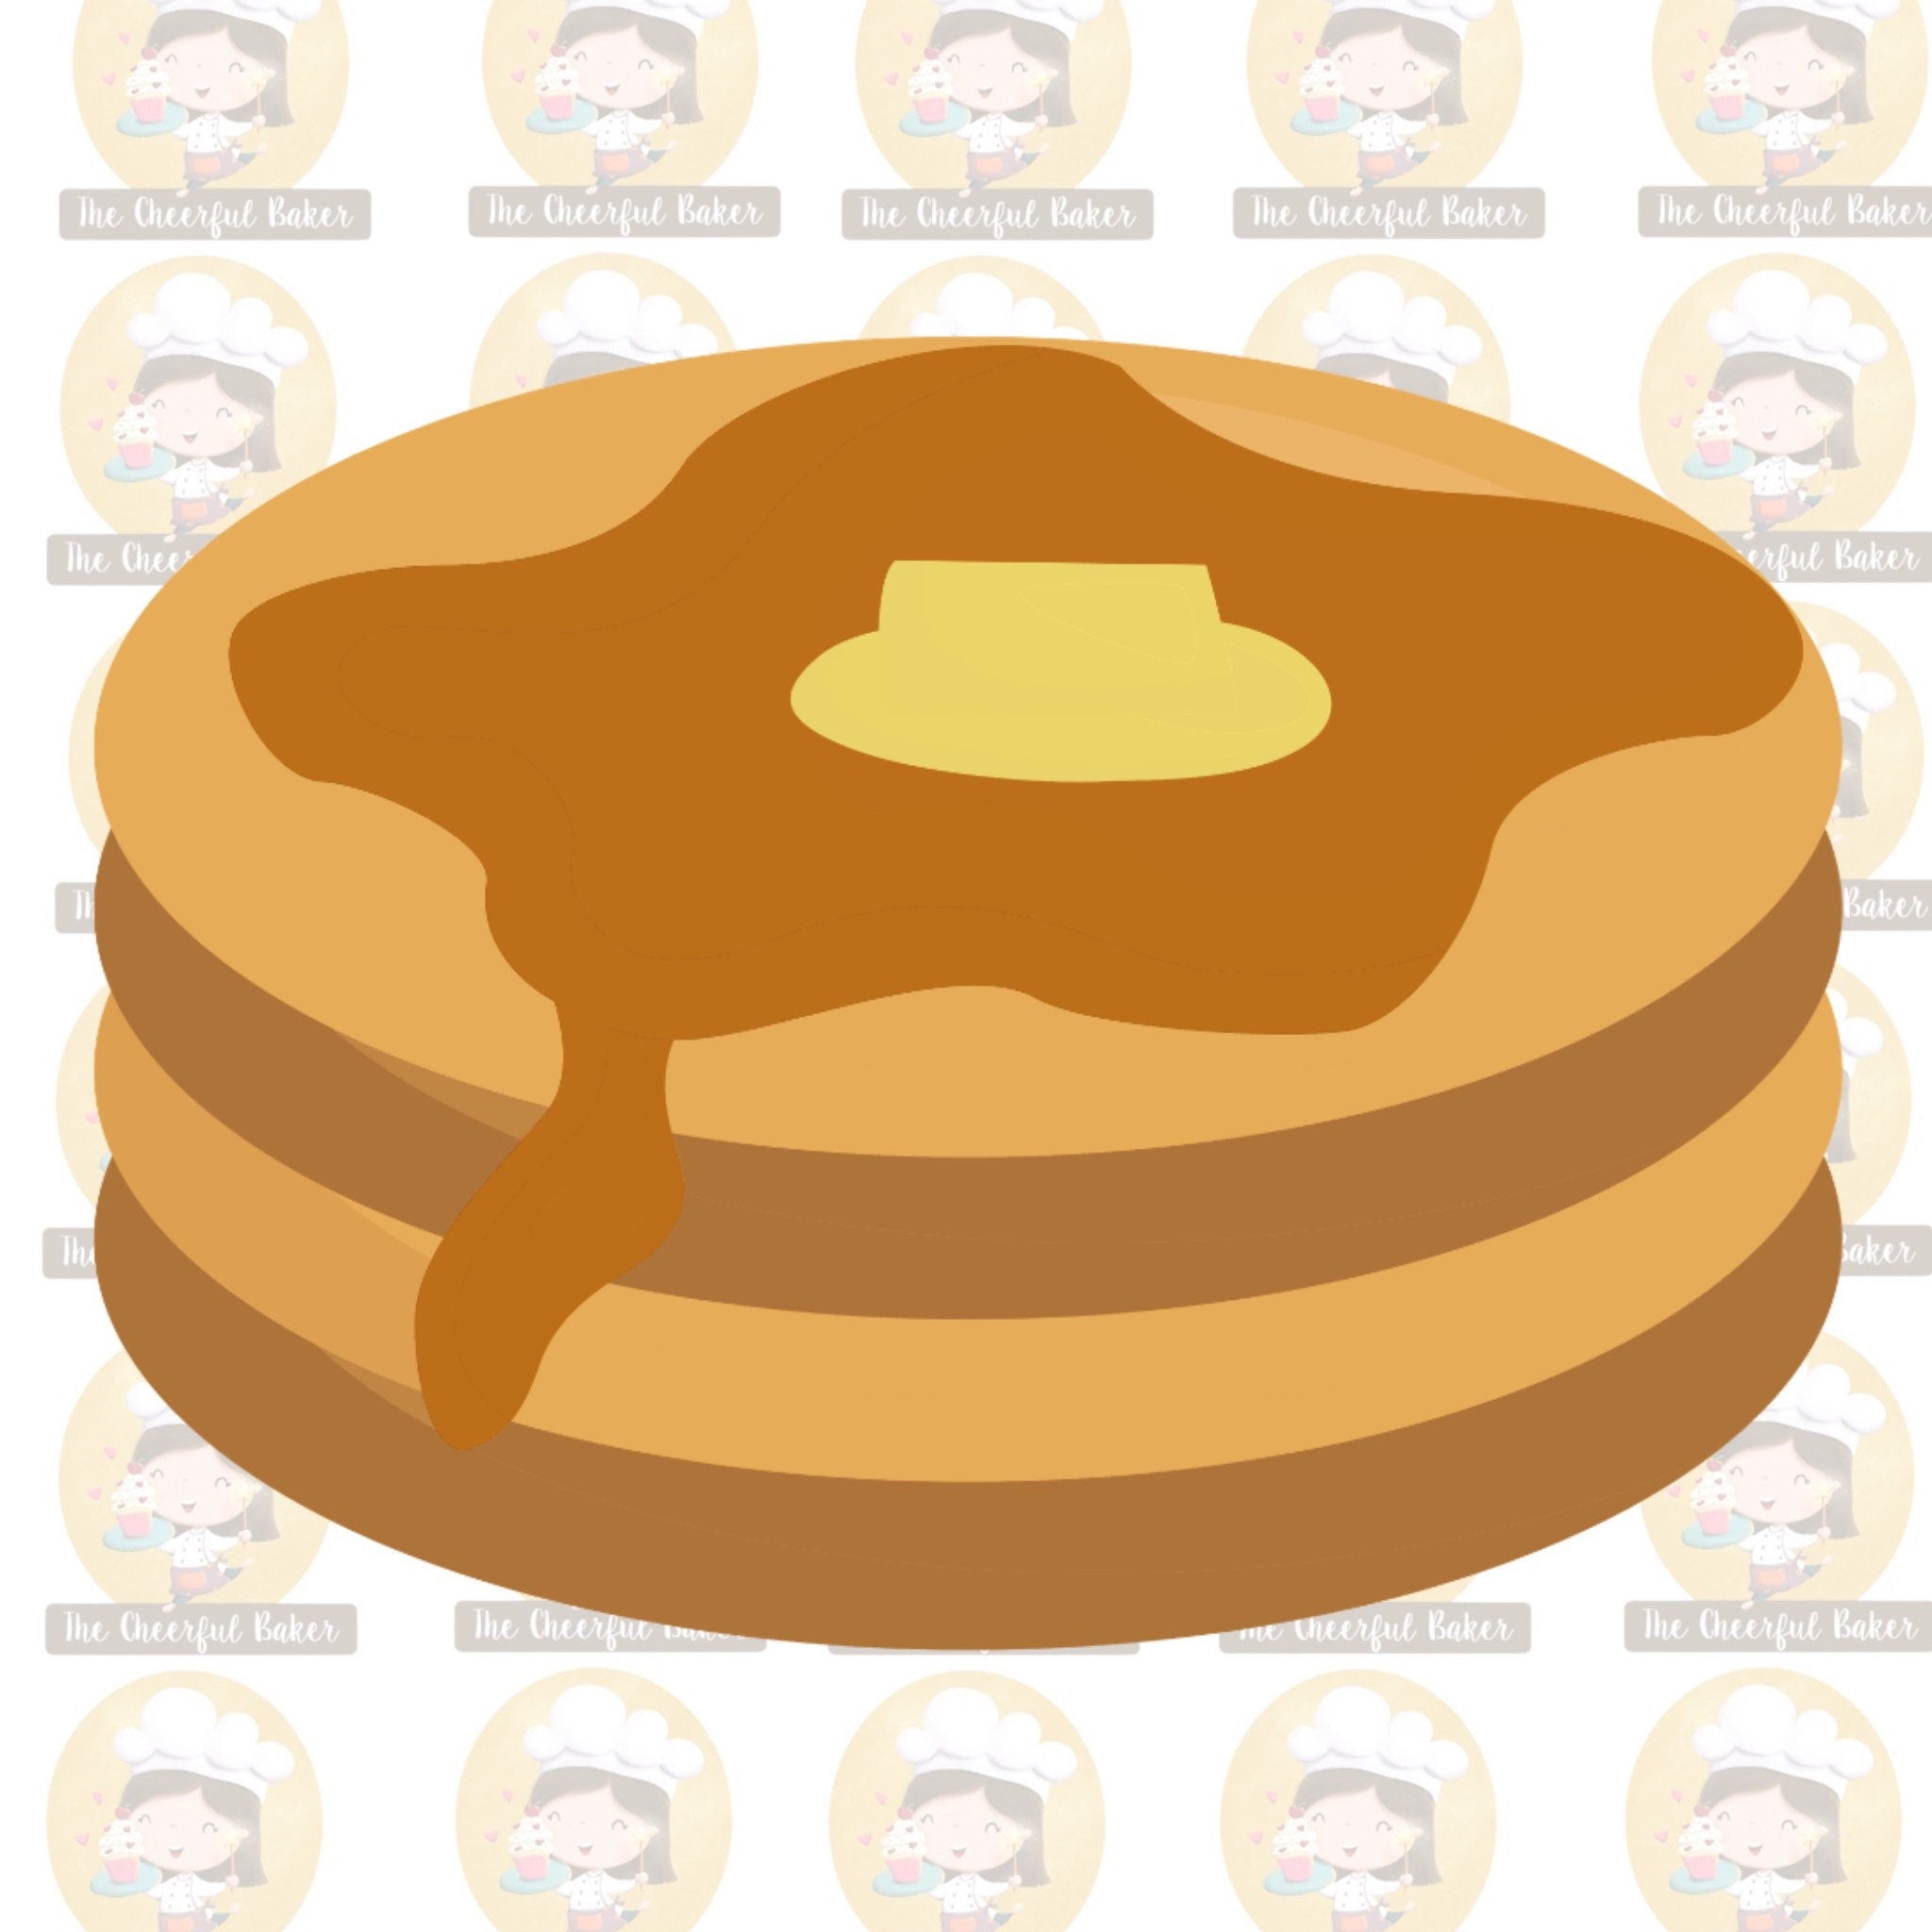 Pancake stack cookie cutter